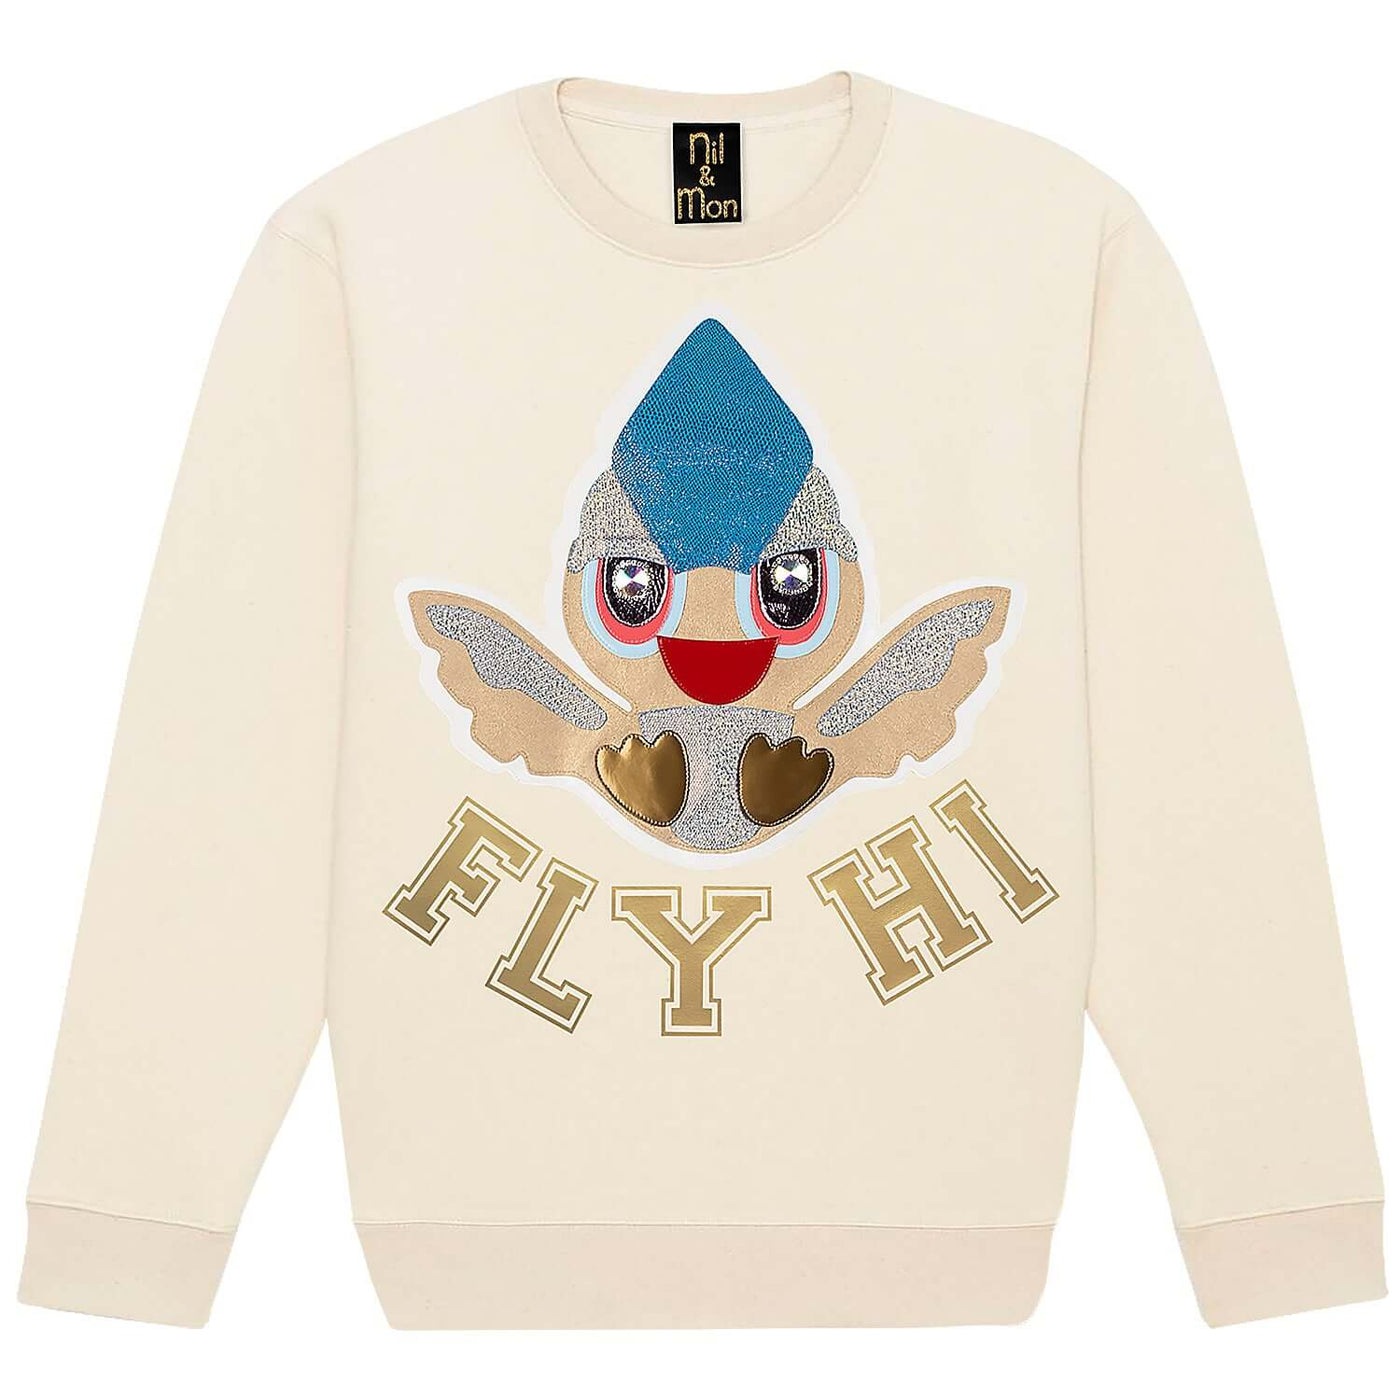 Sweatshirt "Fly Hi" - creme